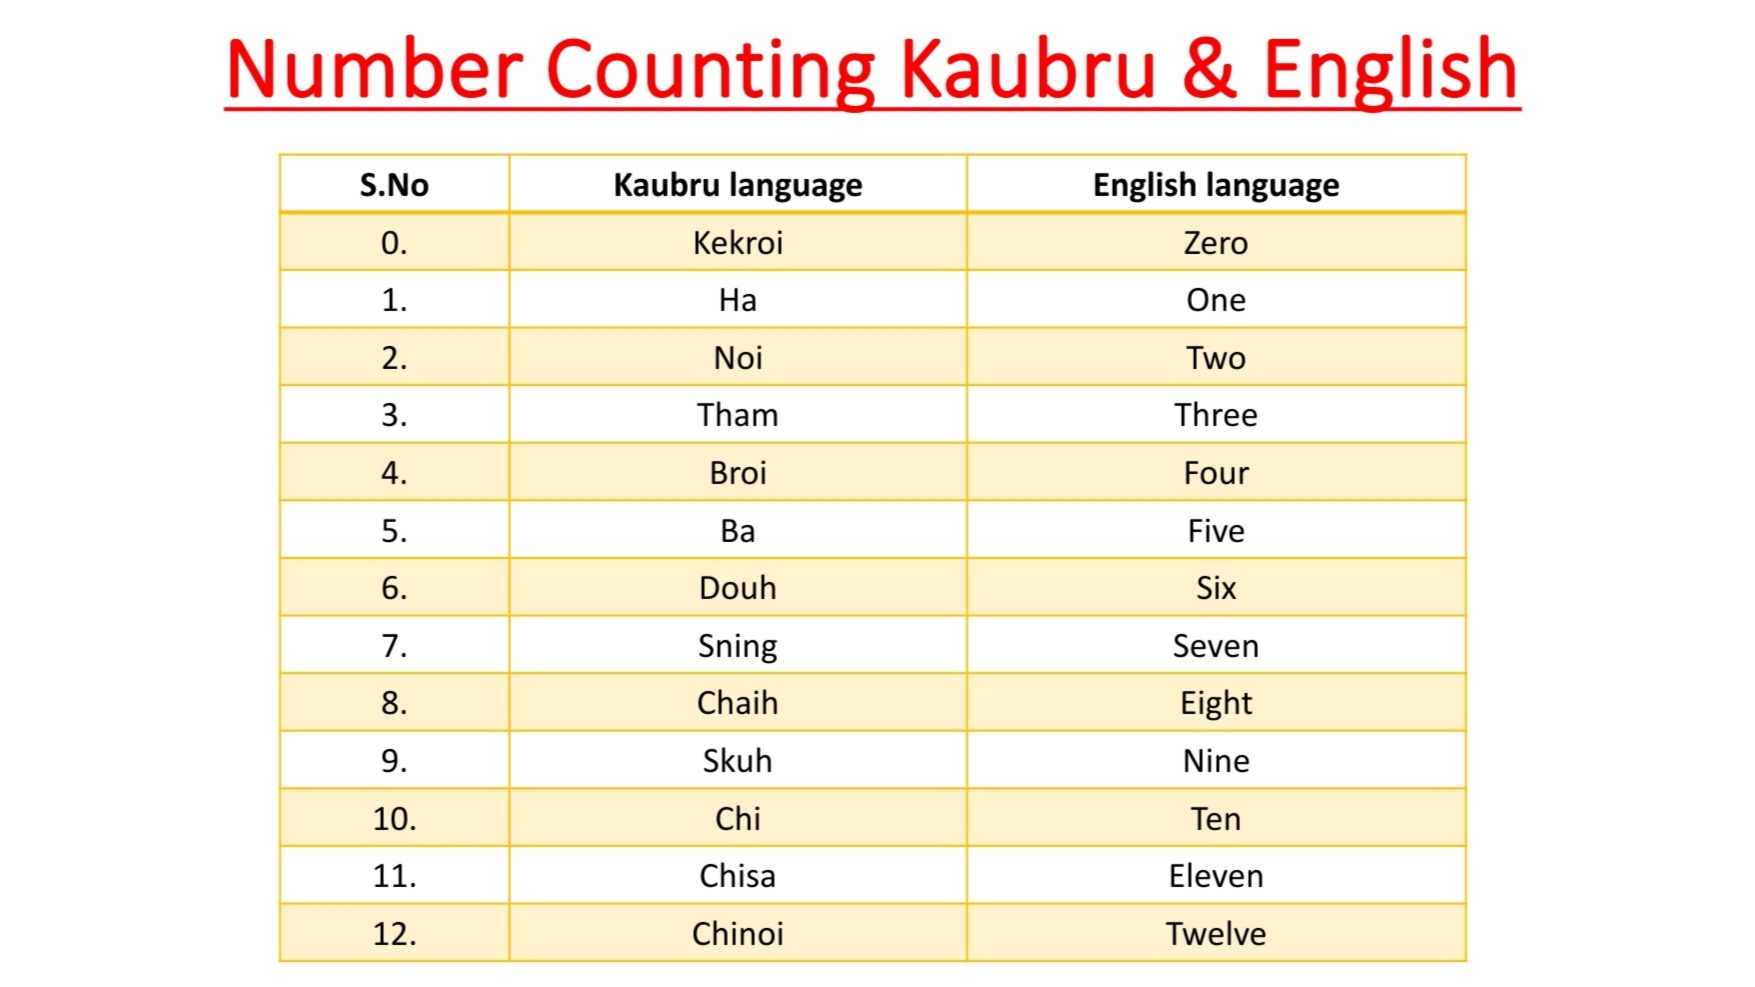 Number Counting Kaubru language